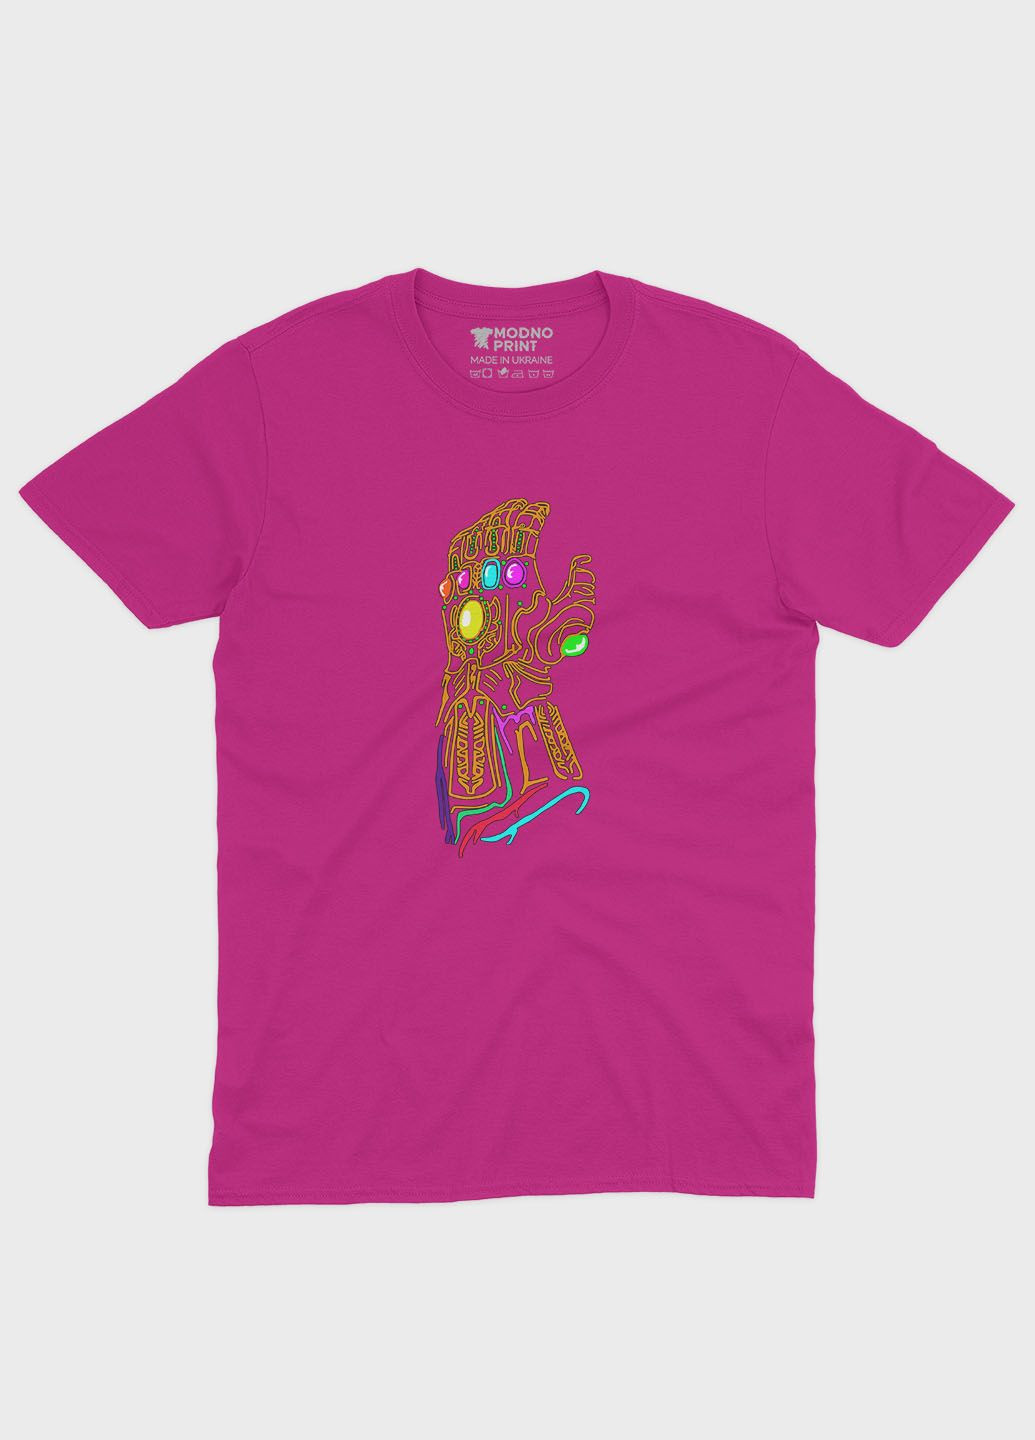 Рожева демісезонна футболка для дівчинки з принтом супезлодія - танос (ts001-1-fuxj-006-019-014-g) Modno